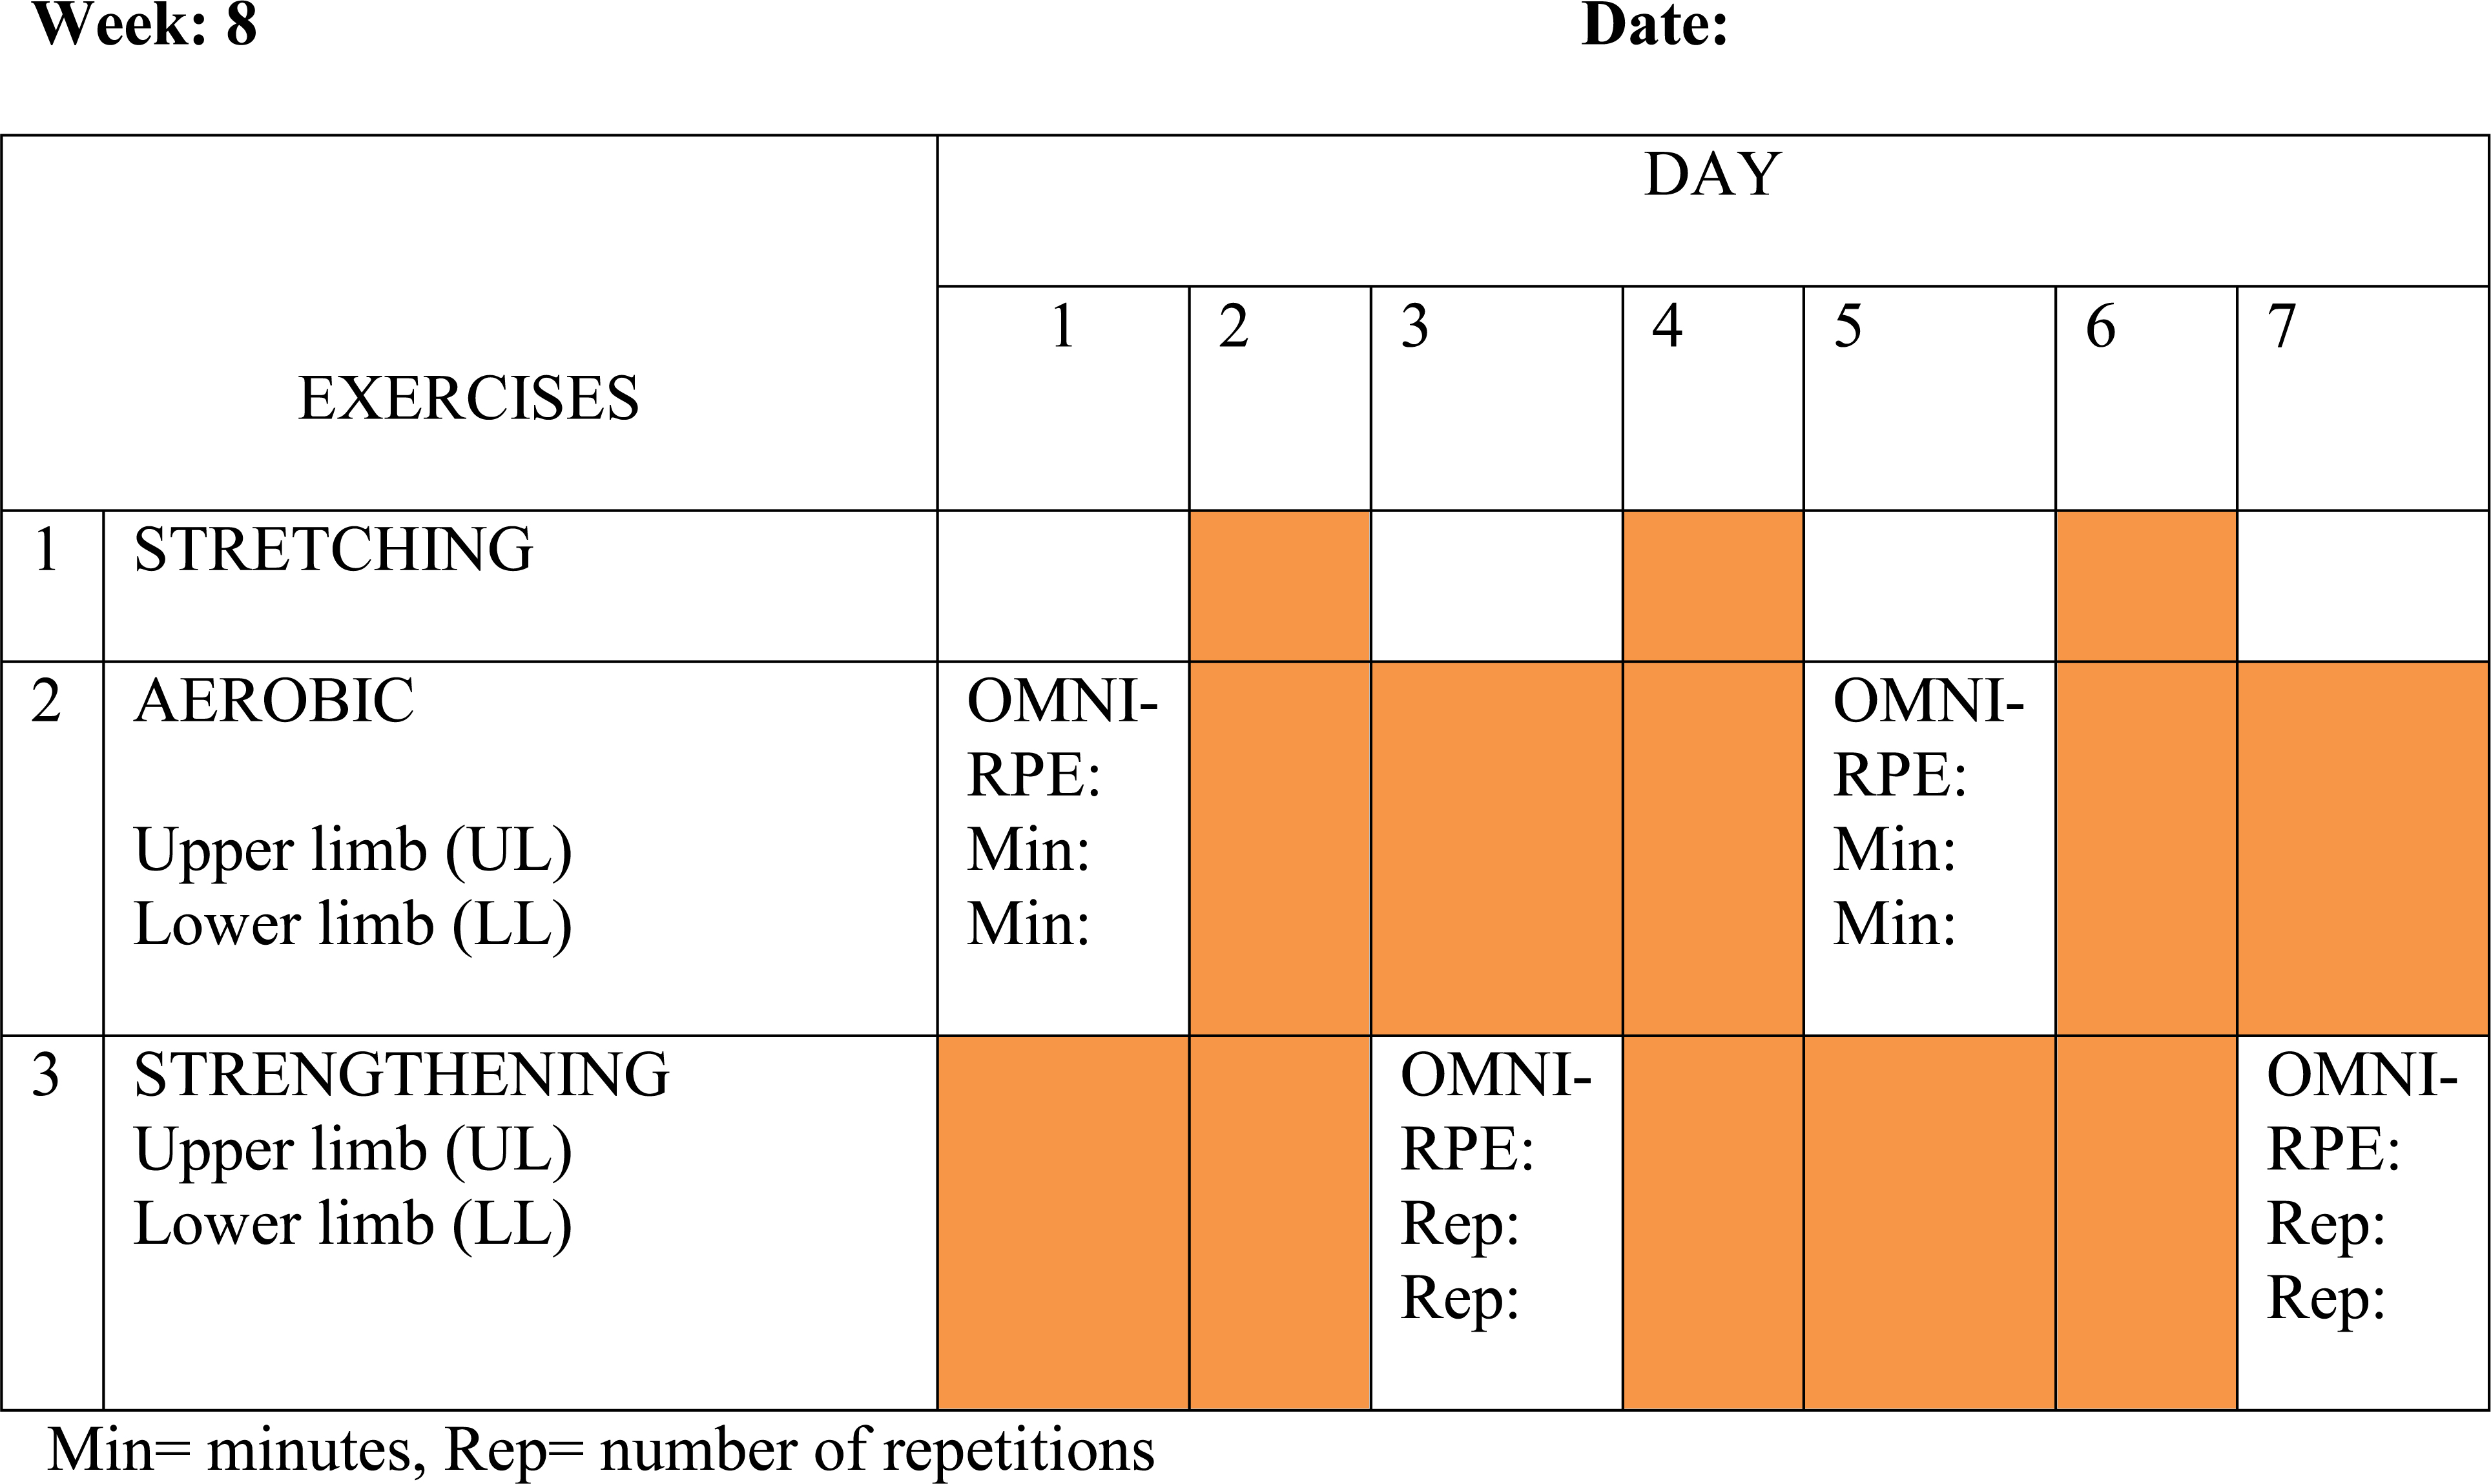 Example of SHEP schedule.